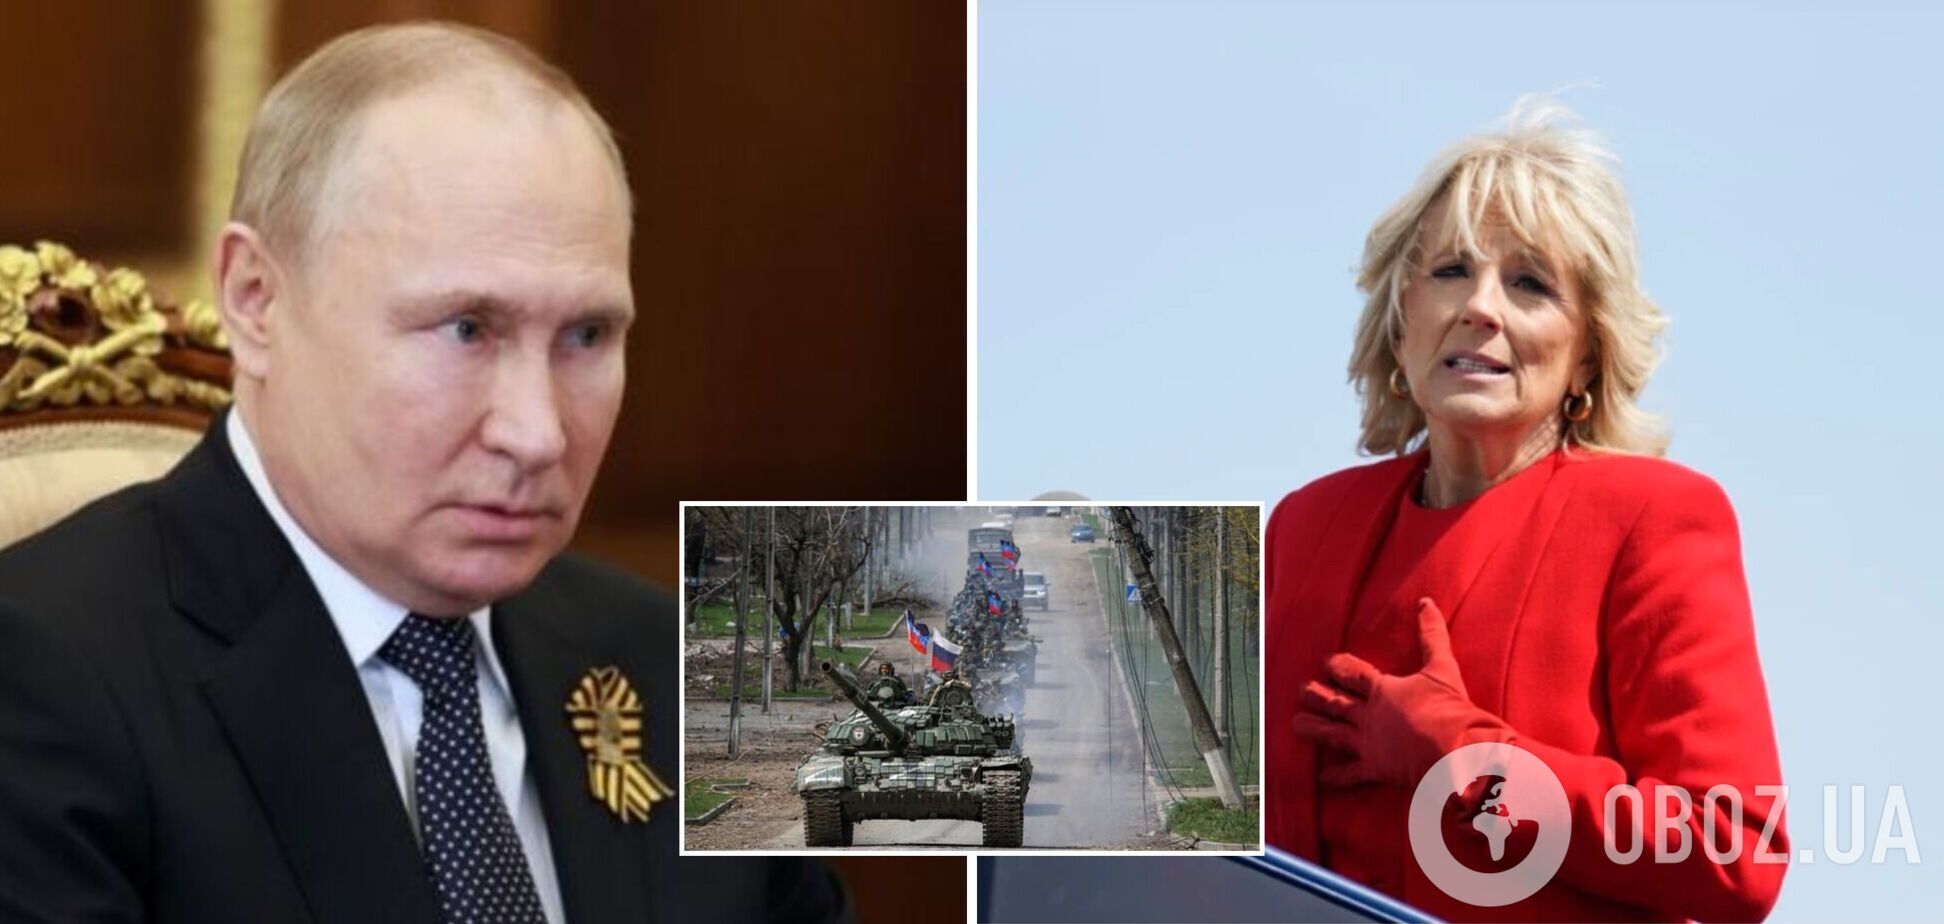 'Припиніть цю безглузду війну!' Дружина Байдена звернулася до Путіна